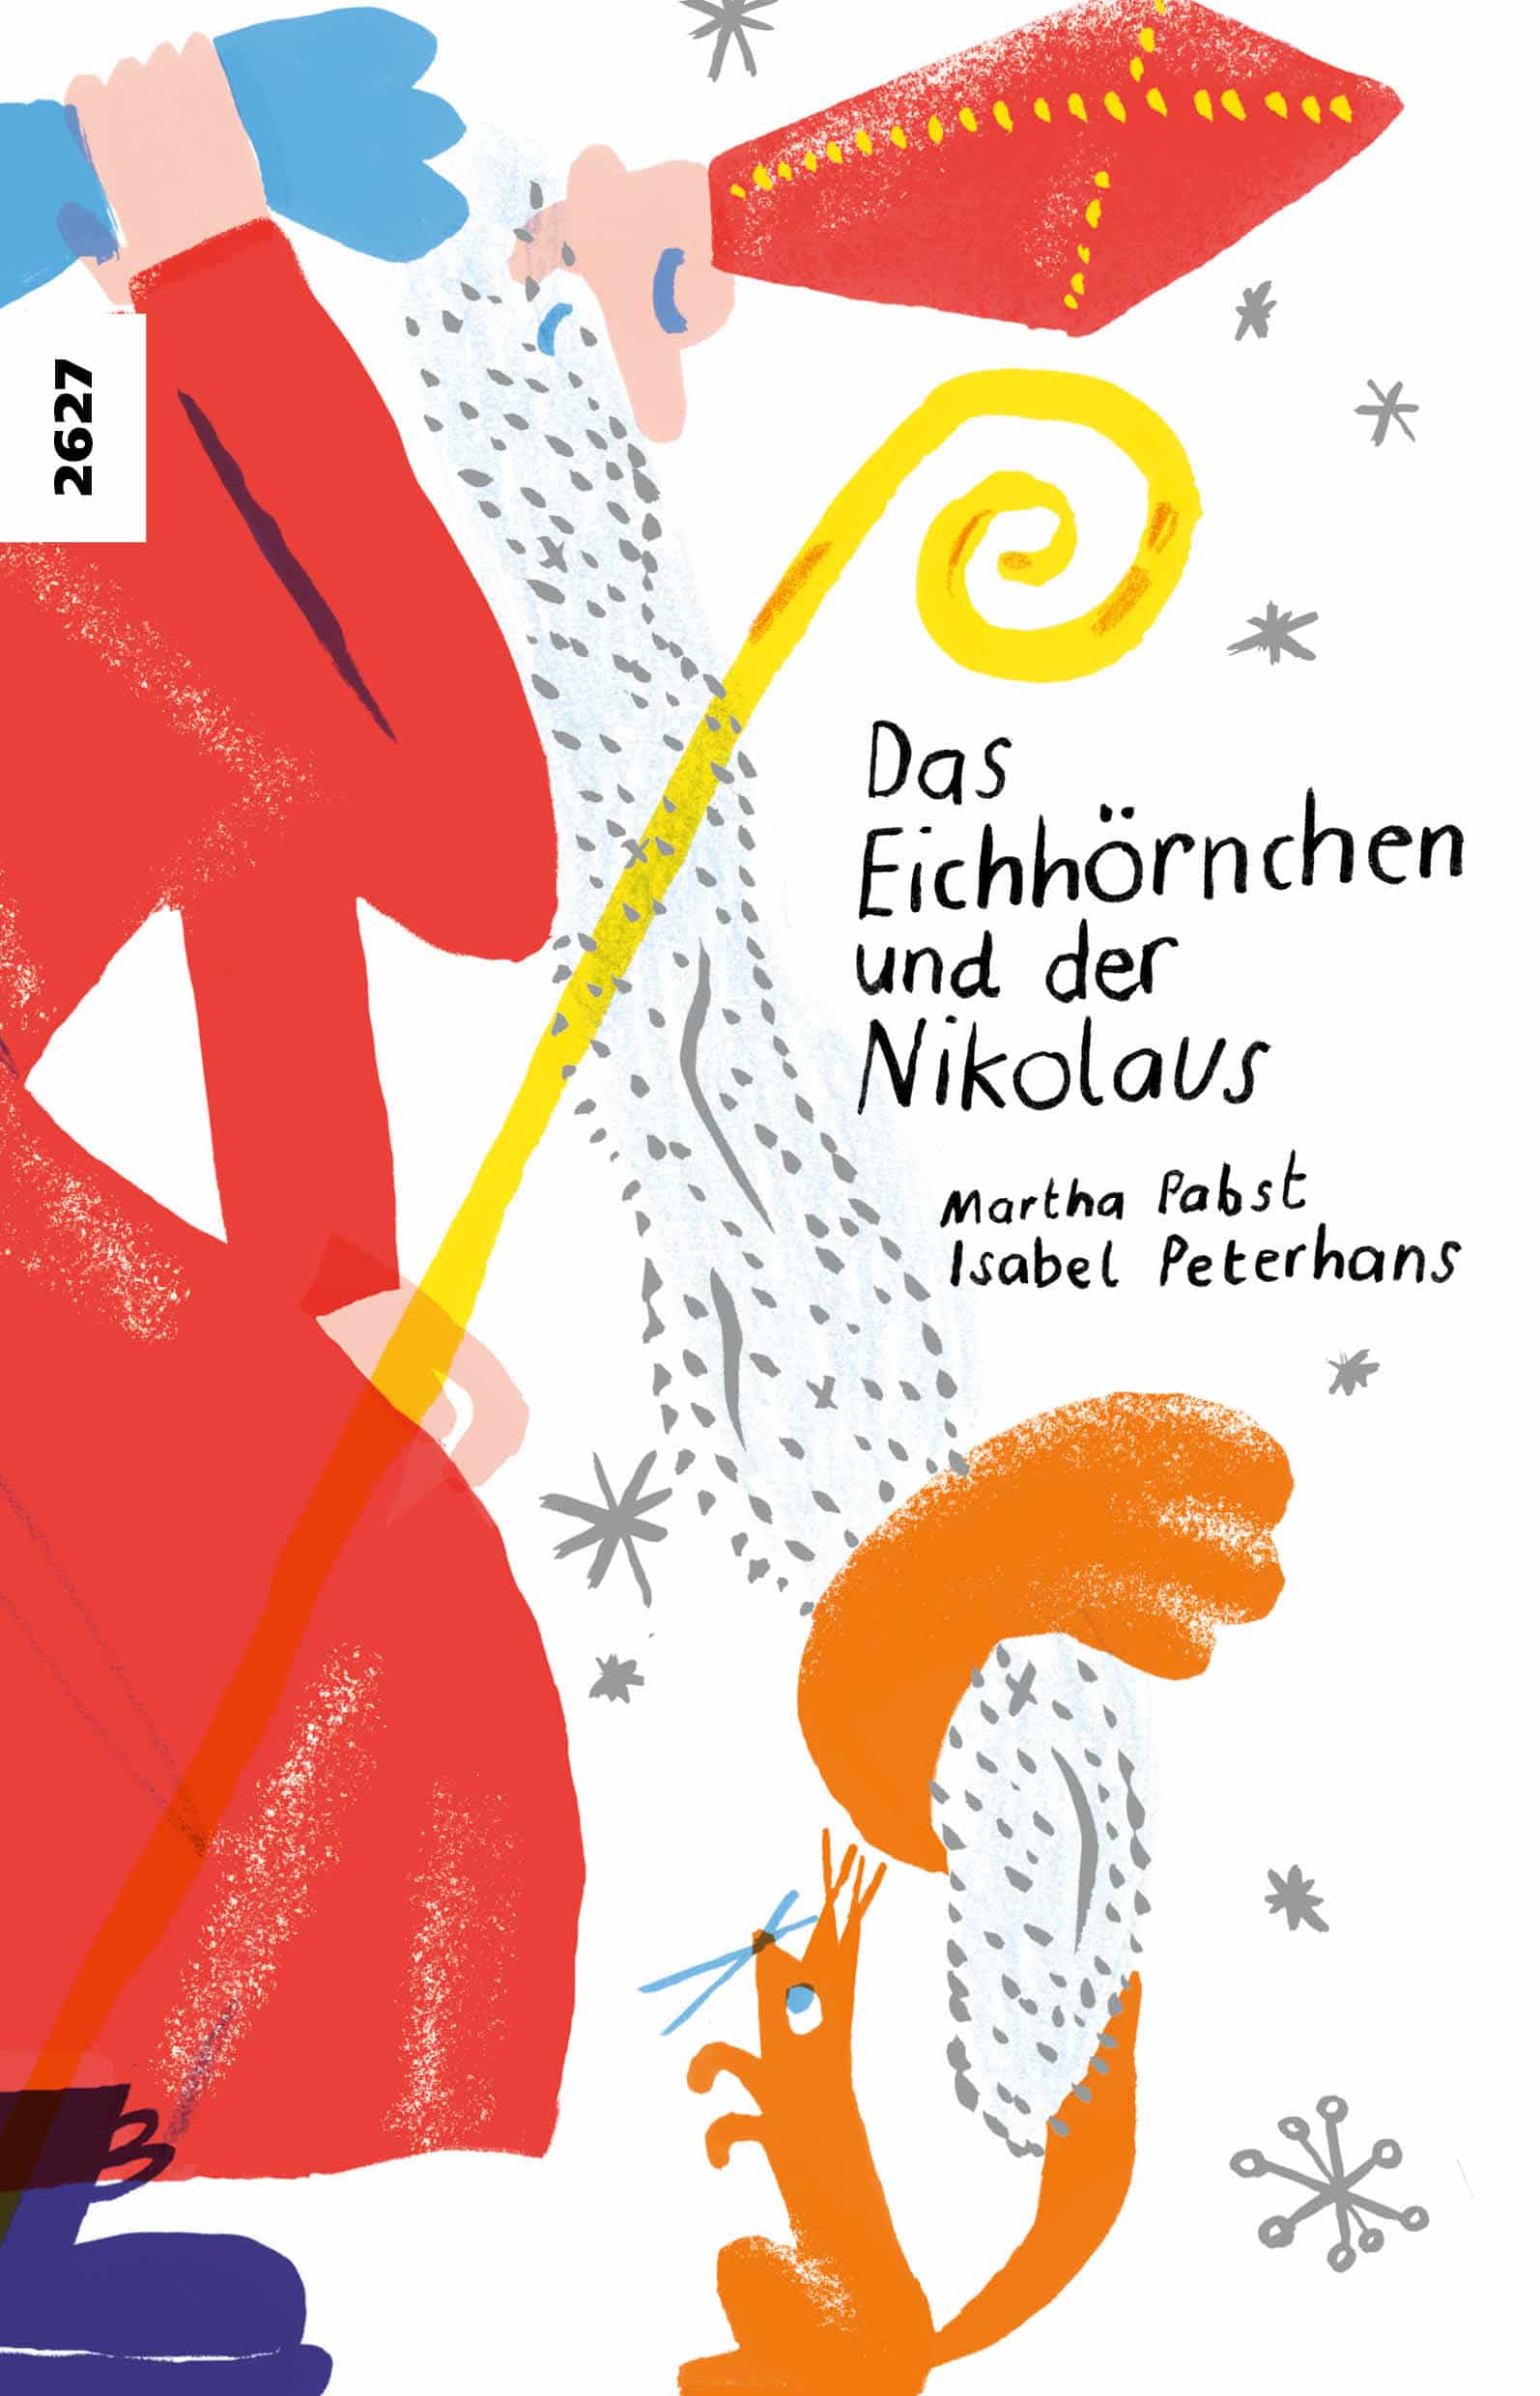 Das Eichhoernchen und der Nikolaus, ein Kinderbuch von Martha Pabst, Illustration von Isabel Peterhans, SJW Verlag, Advent